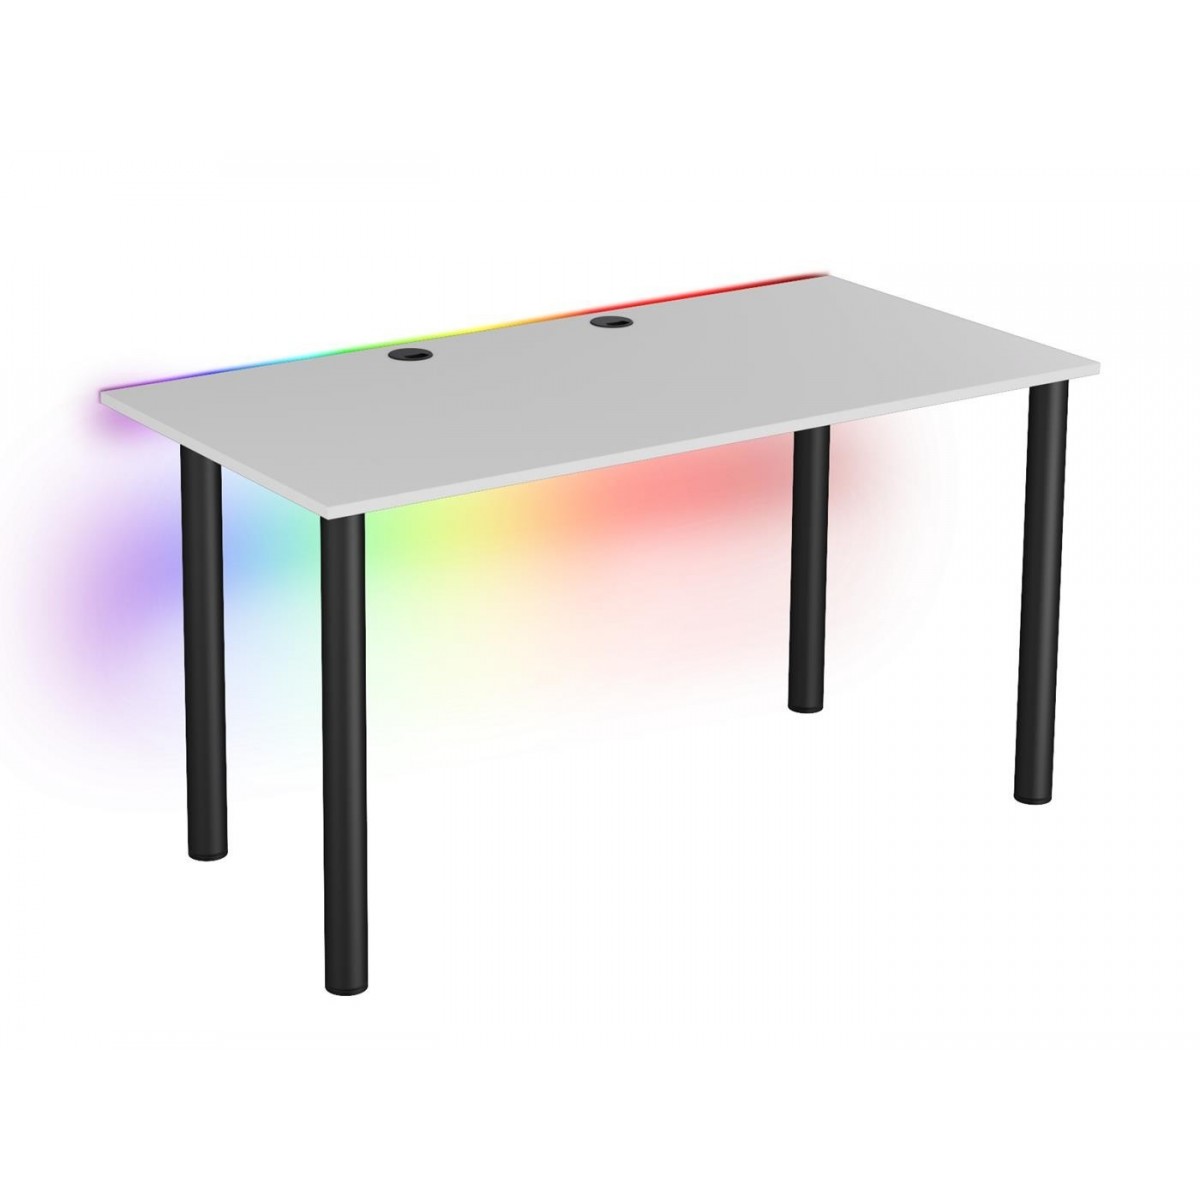 Tanie biurko dla gracza Basia XL białe LED pilot przelotka 68x138cm